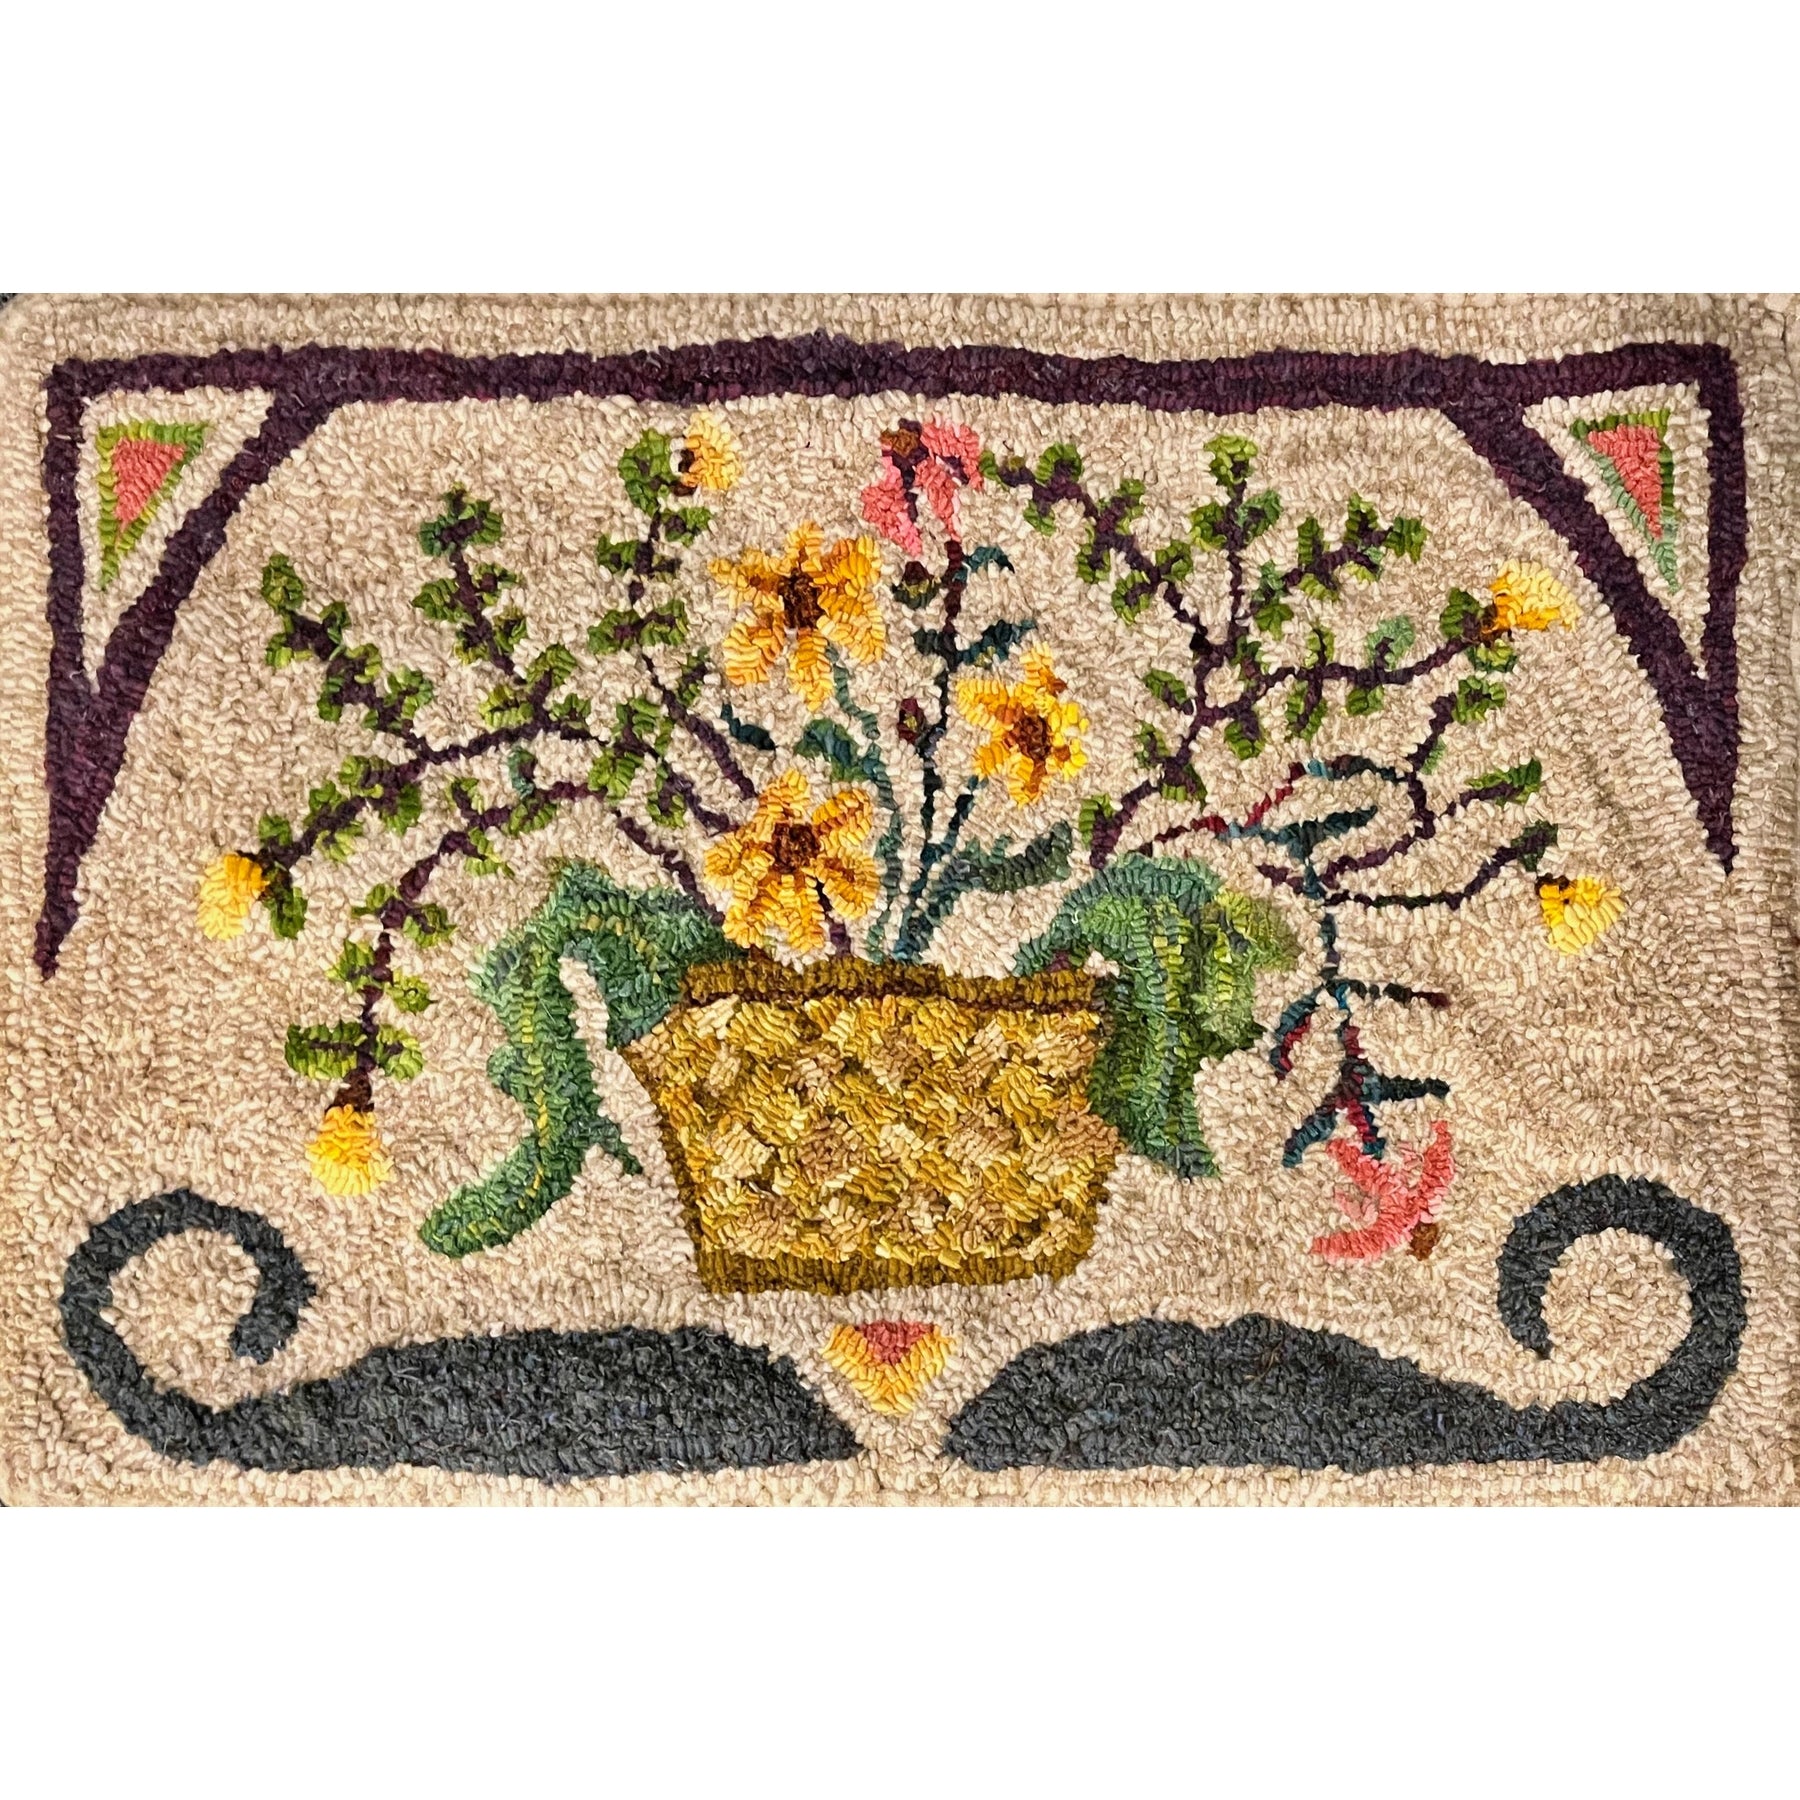 Basket Of Flowers, rug hooked by Sherrie Petersen